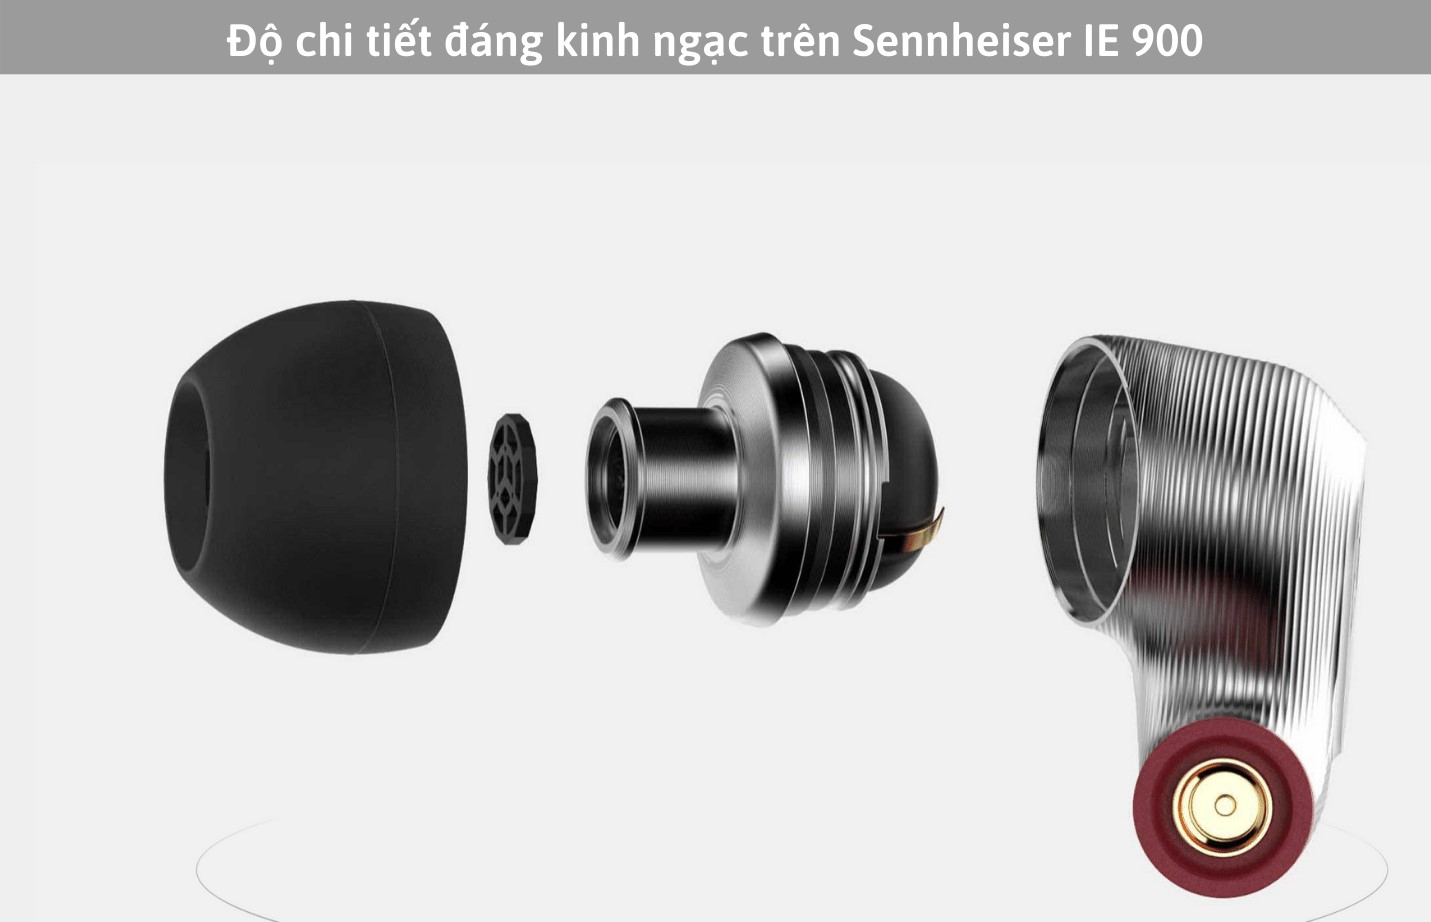 Sennheiser IE900